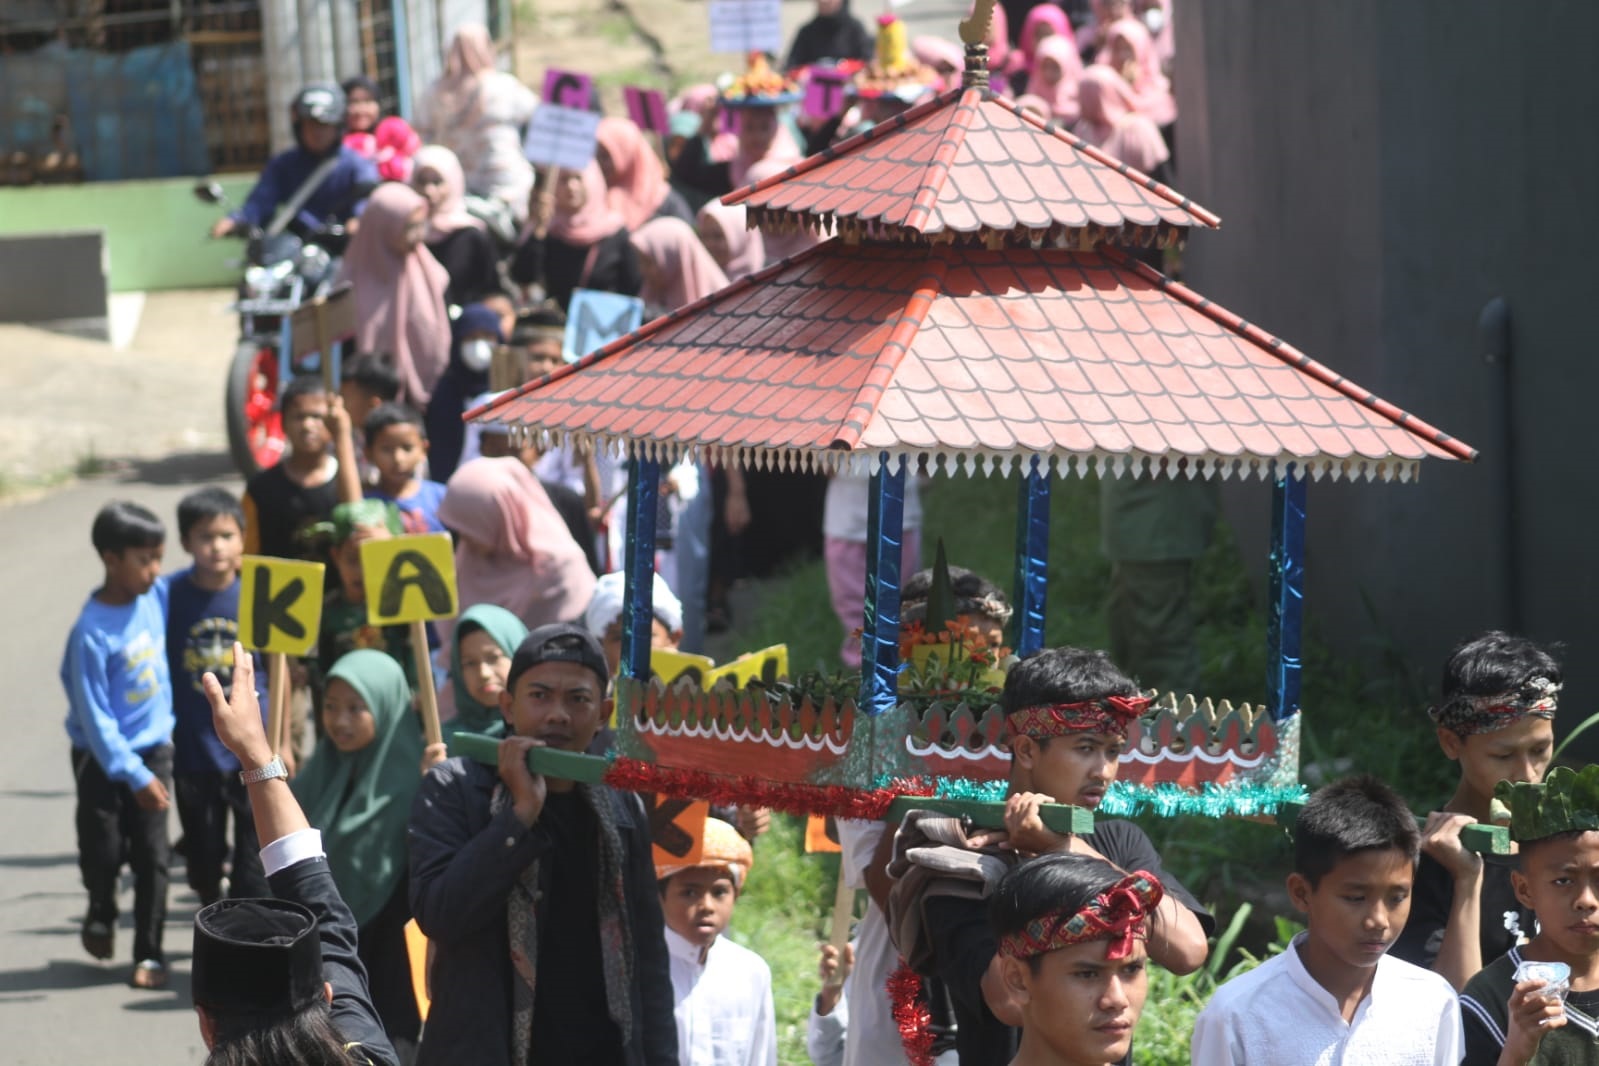 Sejumlah warga mengikuti pawai dongdang di Jalan Cimande, Desa Lemah Duhur, Kecamatan Caringin, Kabupaten Bogor, Minggu 25 September 2022. Foto : Sandika Fadilah/JabarEkspres.com